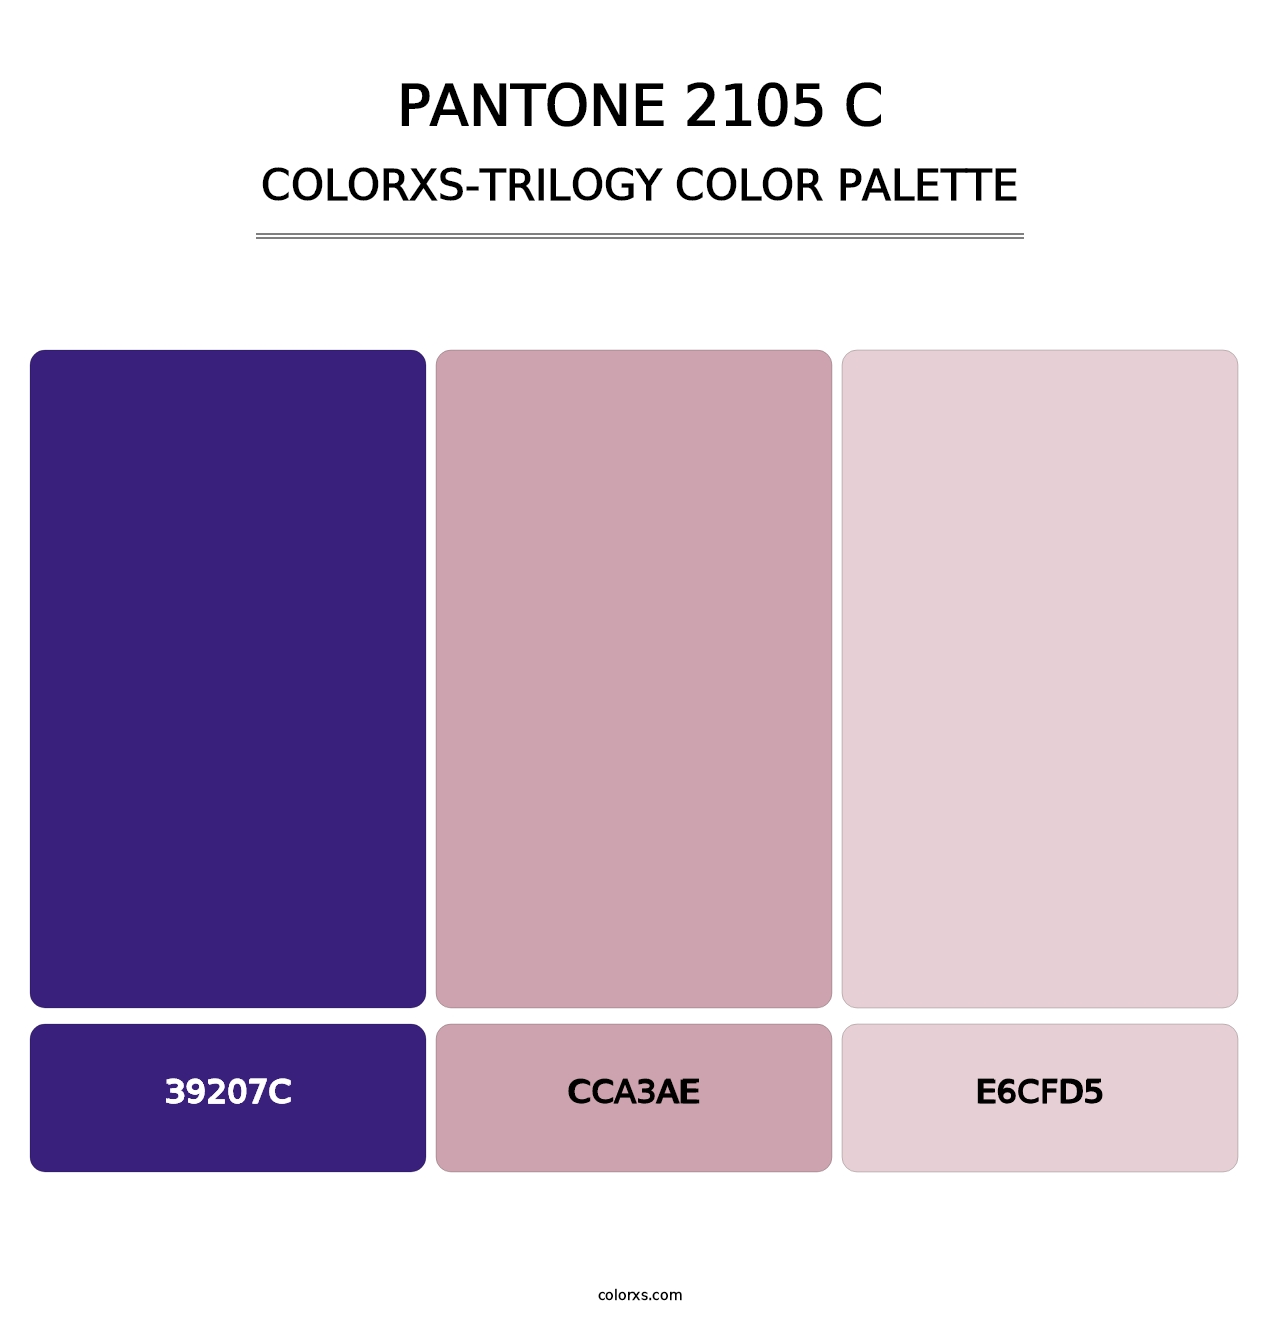 PANTONE 2105 C - Colorxs Trilogy Palette